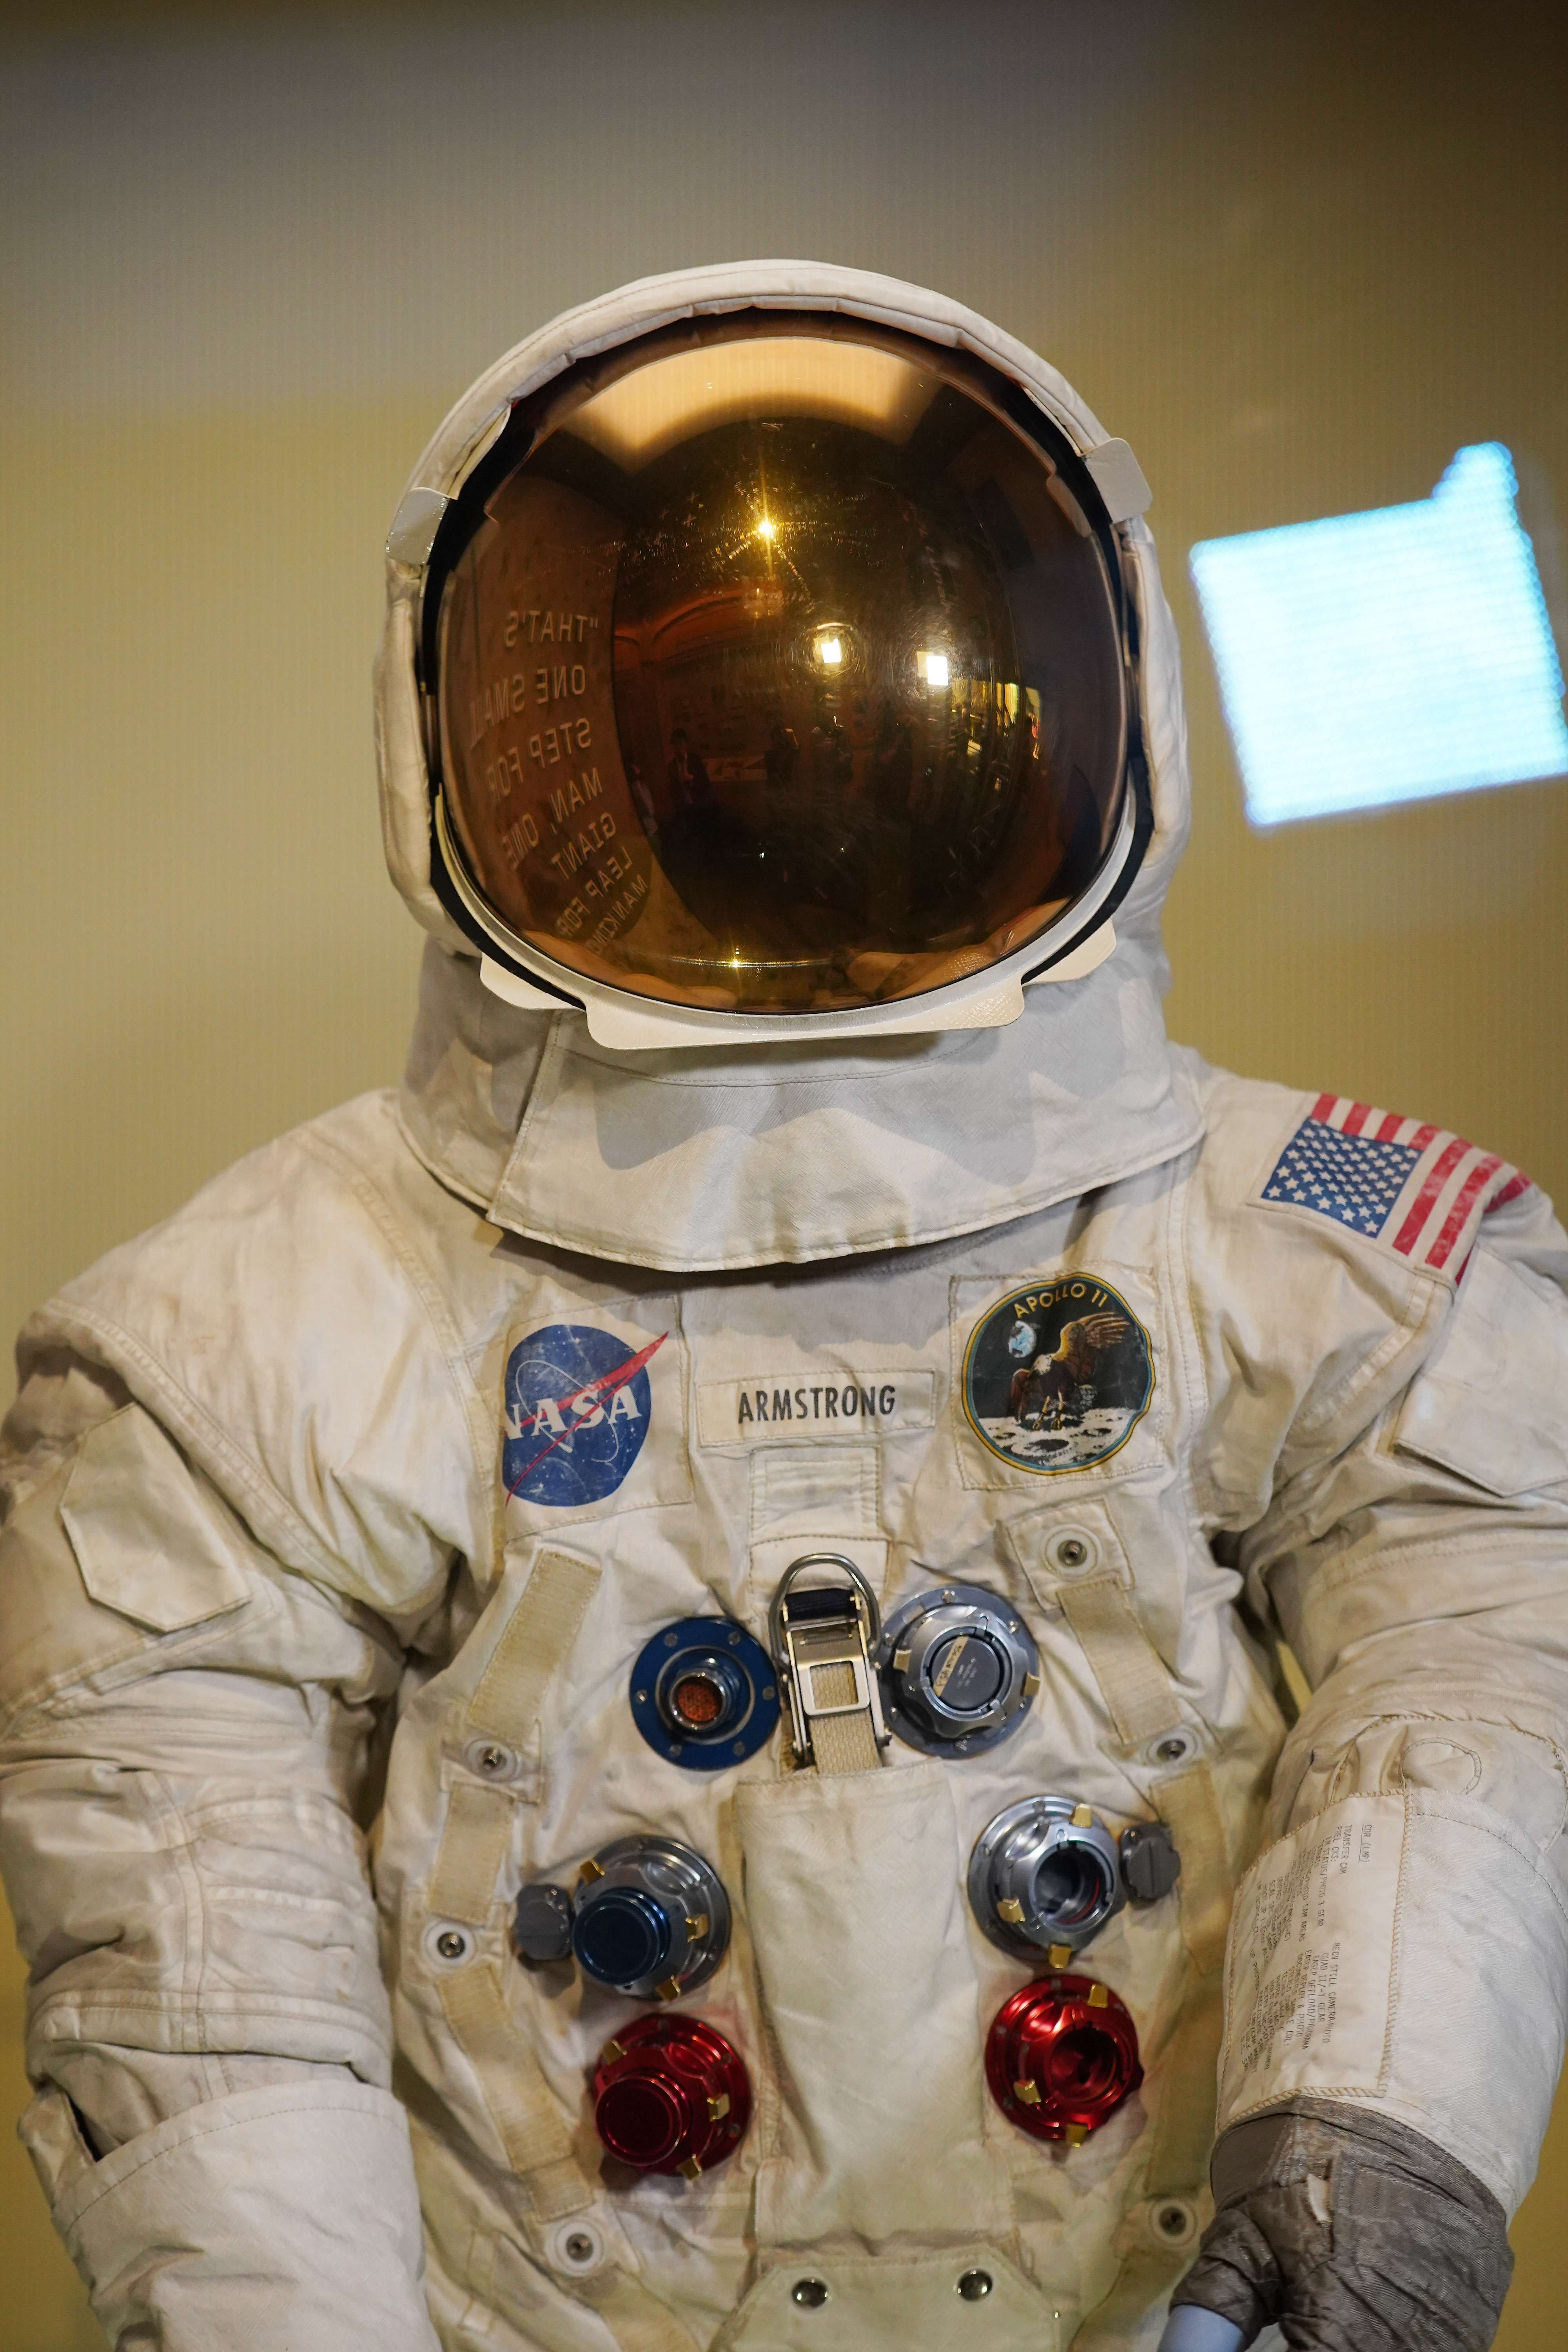 7月16日,在美国华盛顿的国家航空航天博物馆,美国宇航员阿姆斯特朗